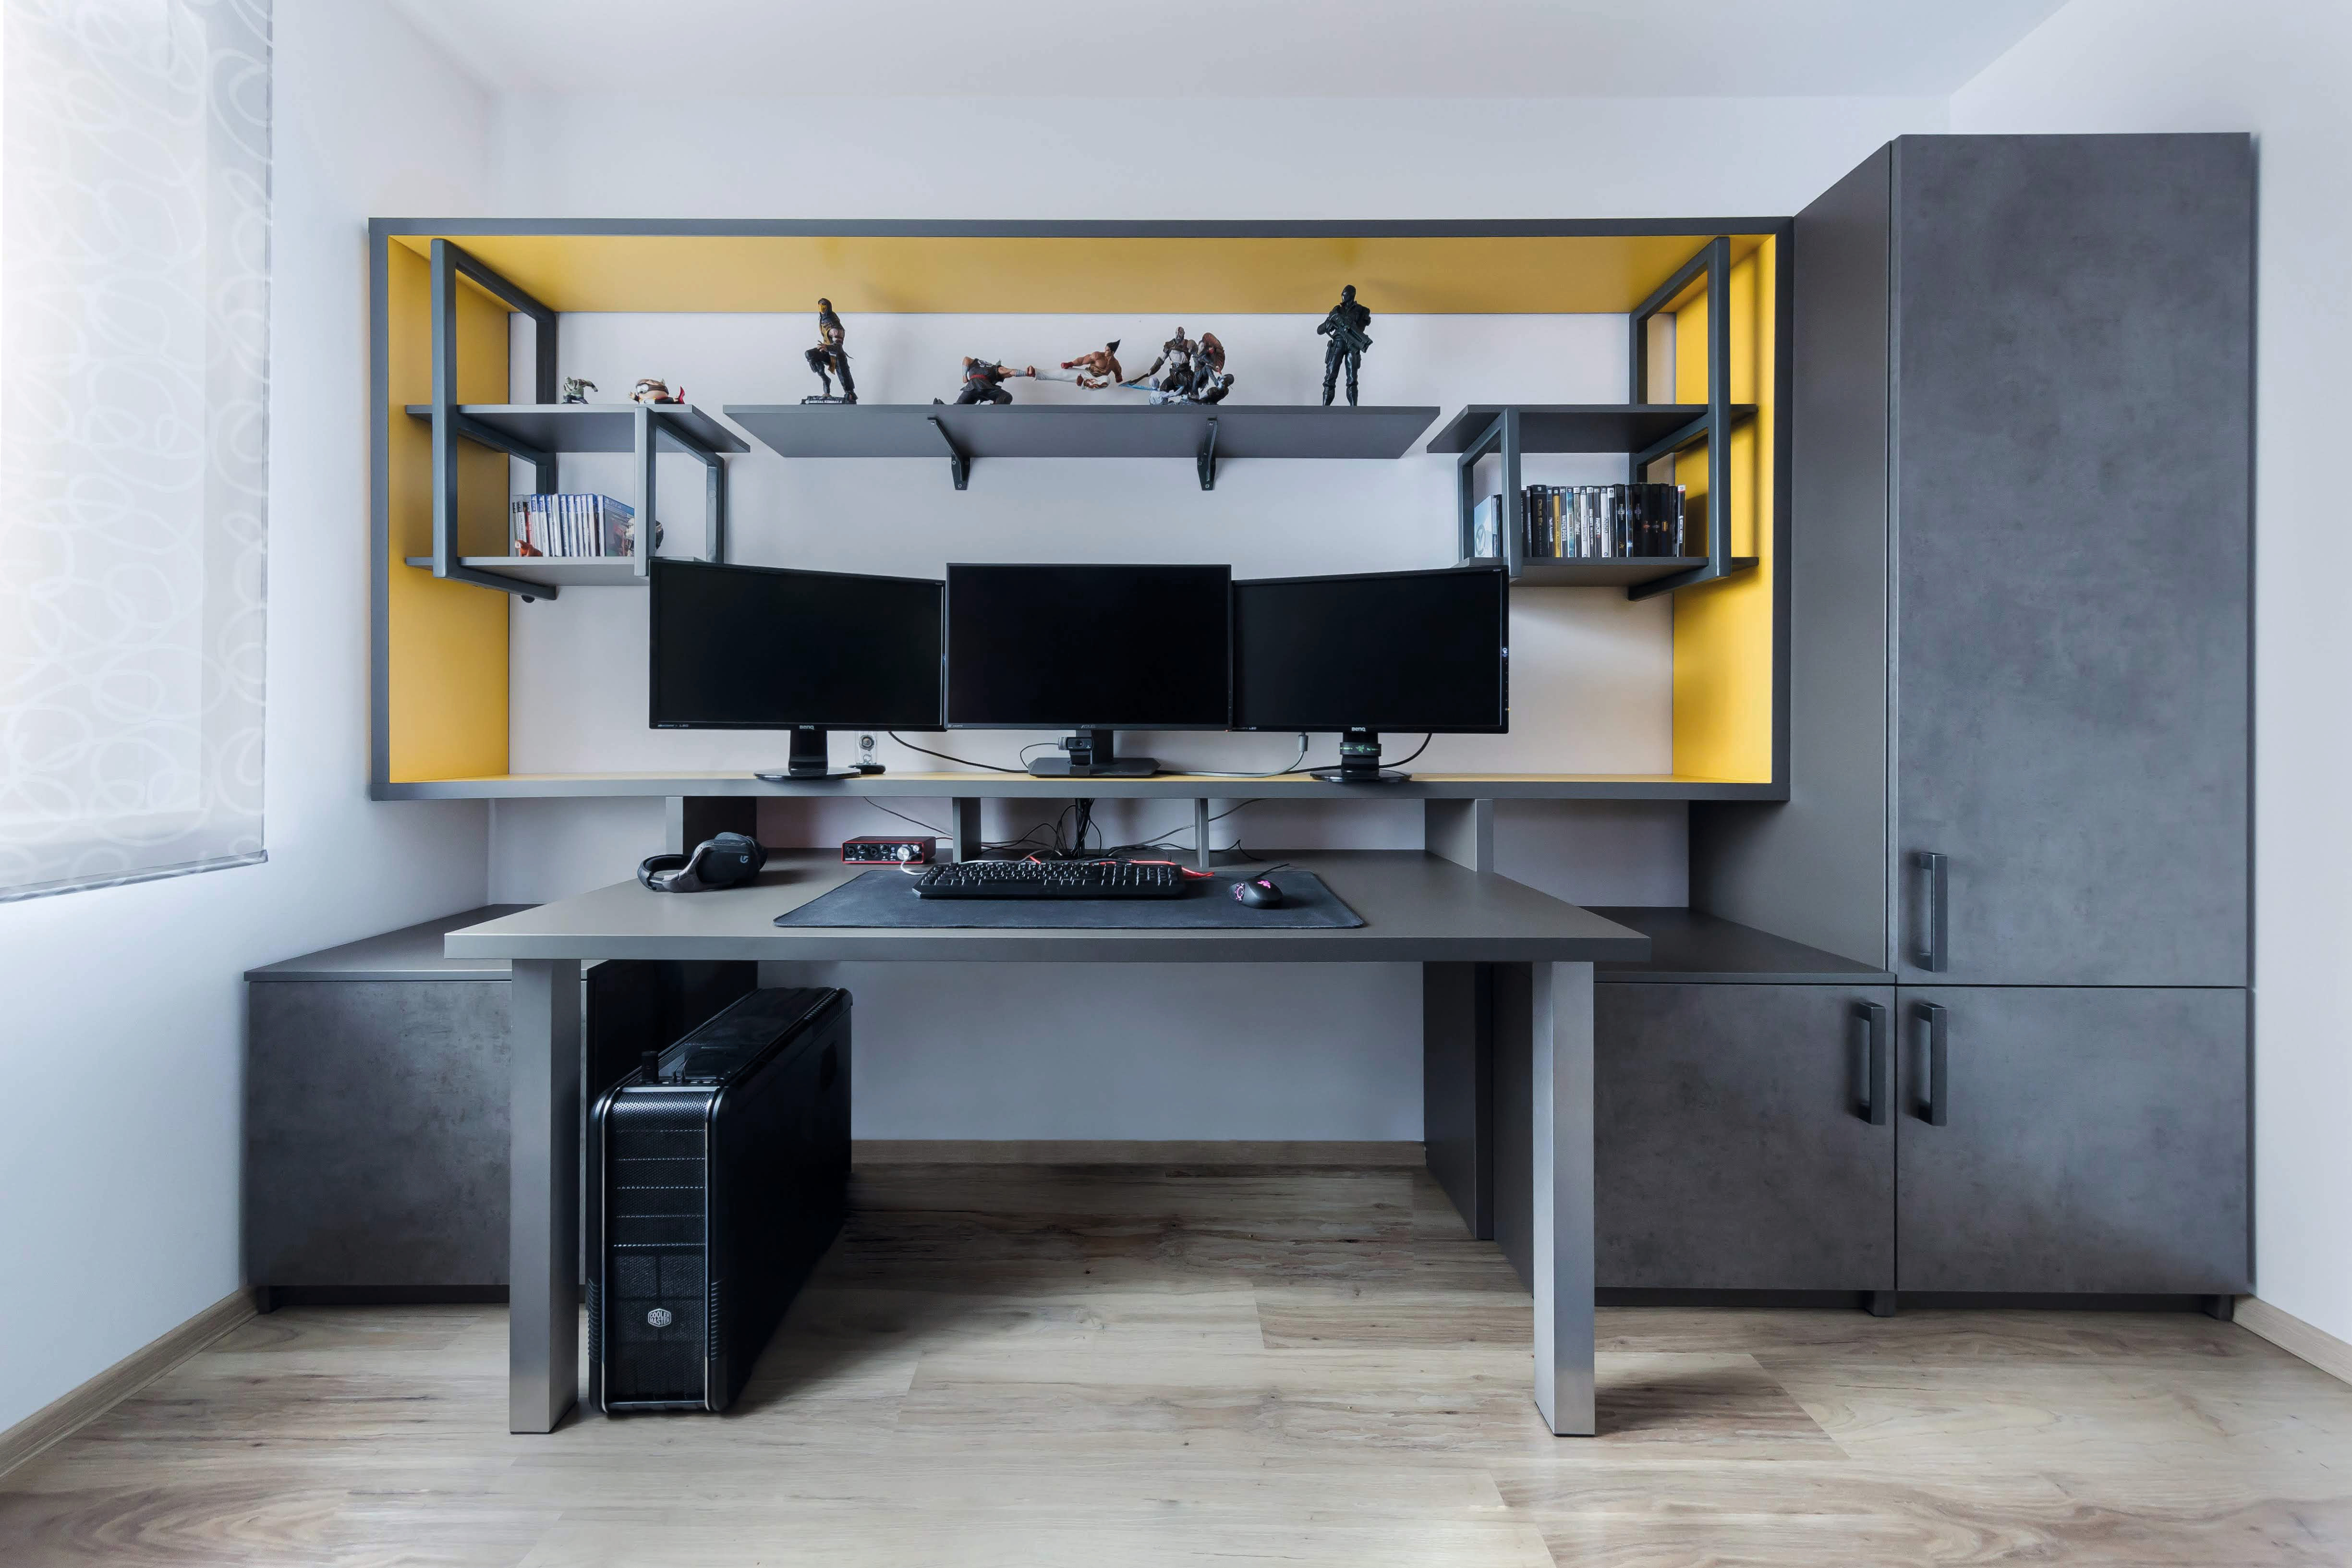 Kancelář je navržena v šedých tónech se žlutými kontrasty.